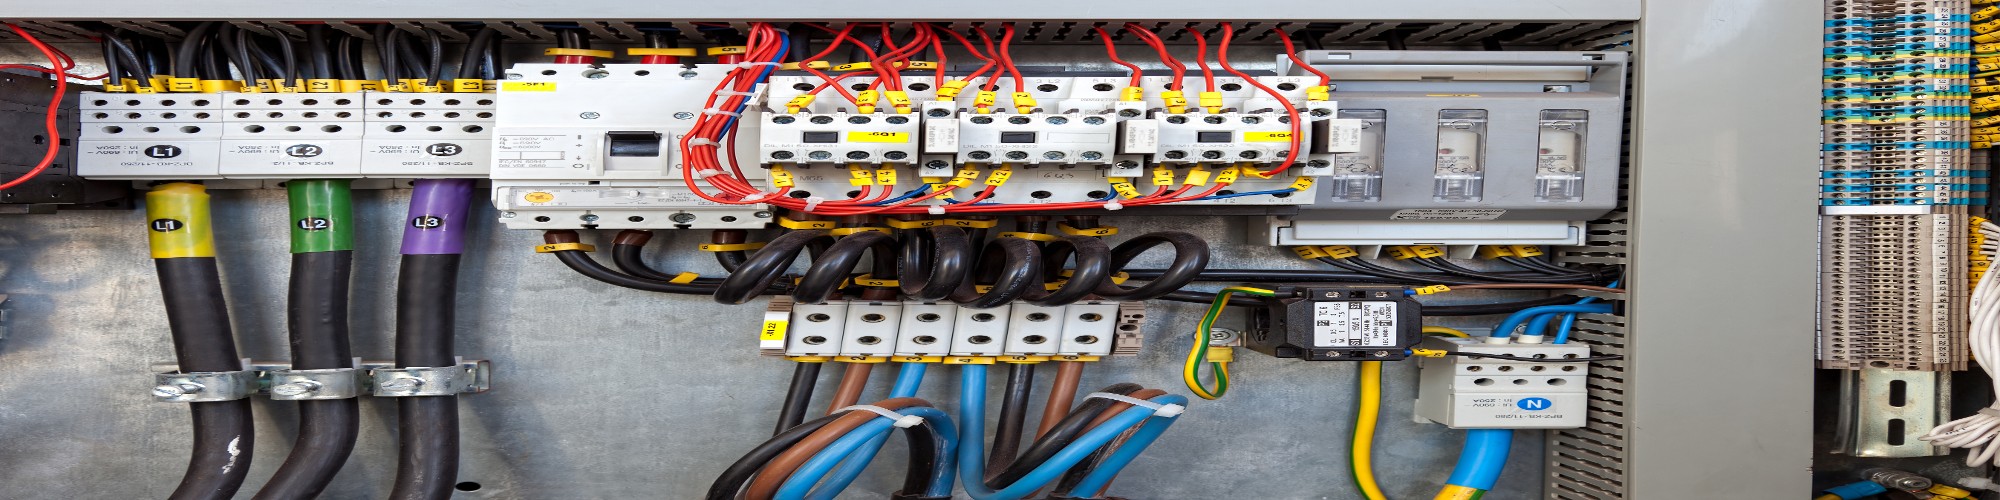 electrical panel upgrades melbourne fl